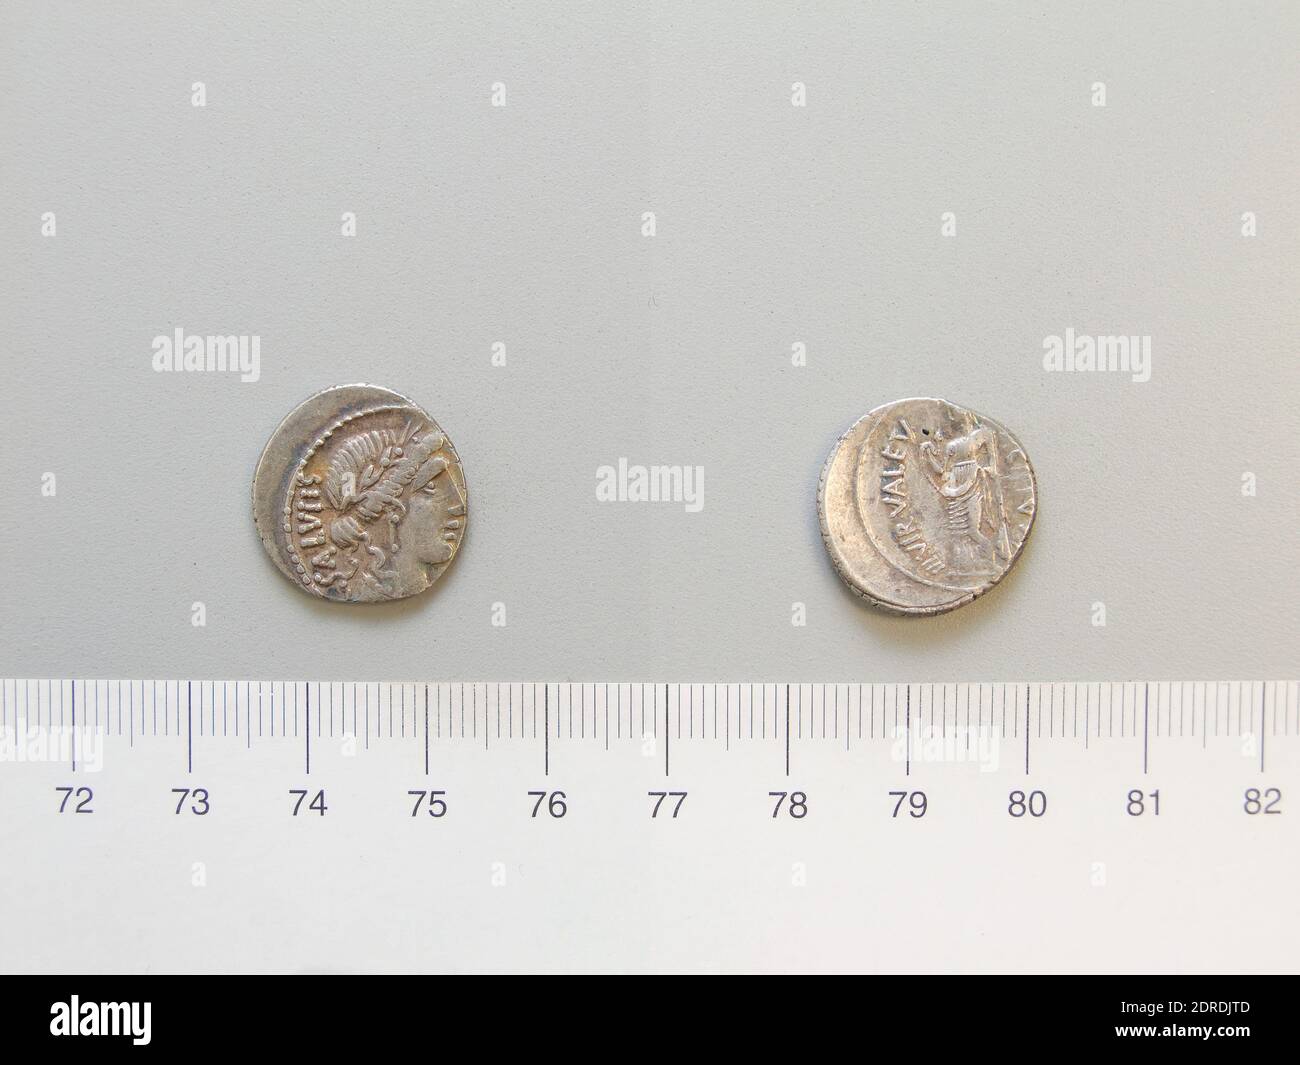 Mint: Rome, Magistrate: M. Acilius, ca. 130 B.C., Denarius from Rome, 49 B.C., Silver, 3.80 g, 5:00, 18 mm, Made in Rome, Italy, Roman, 1st century B.C., Numismatics Stock Photo